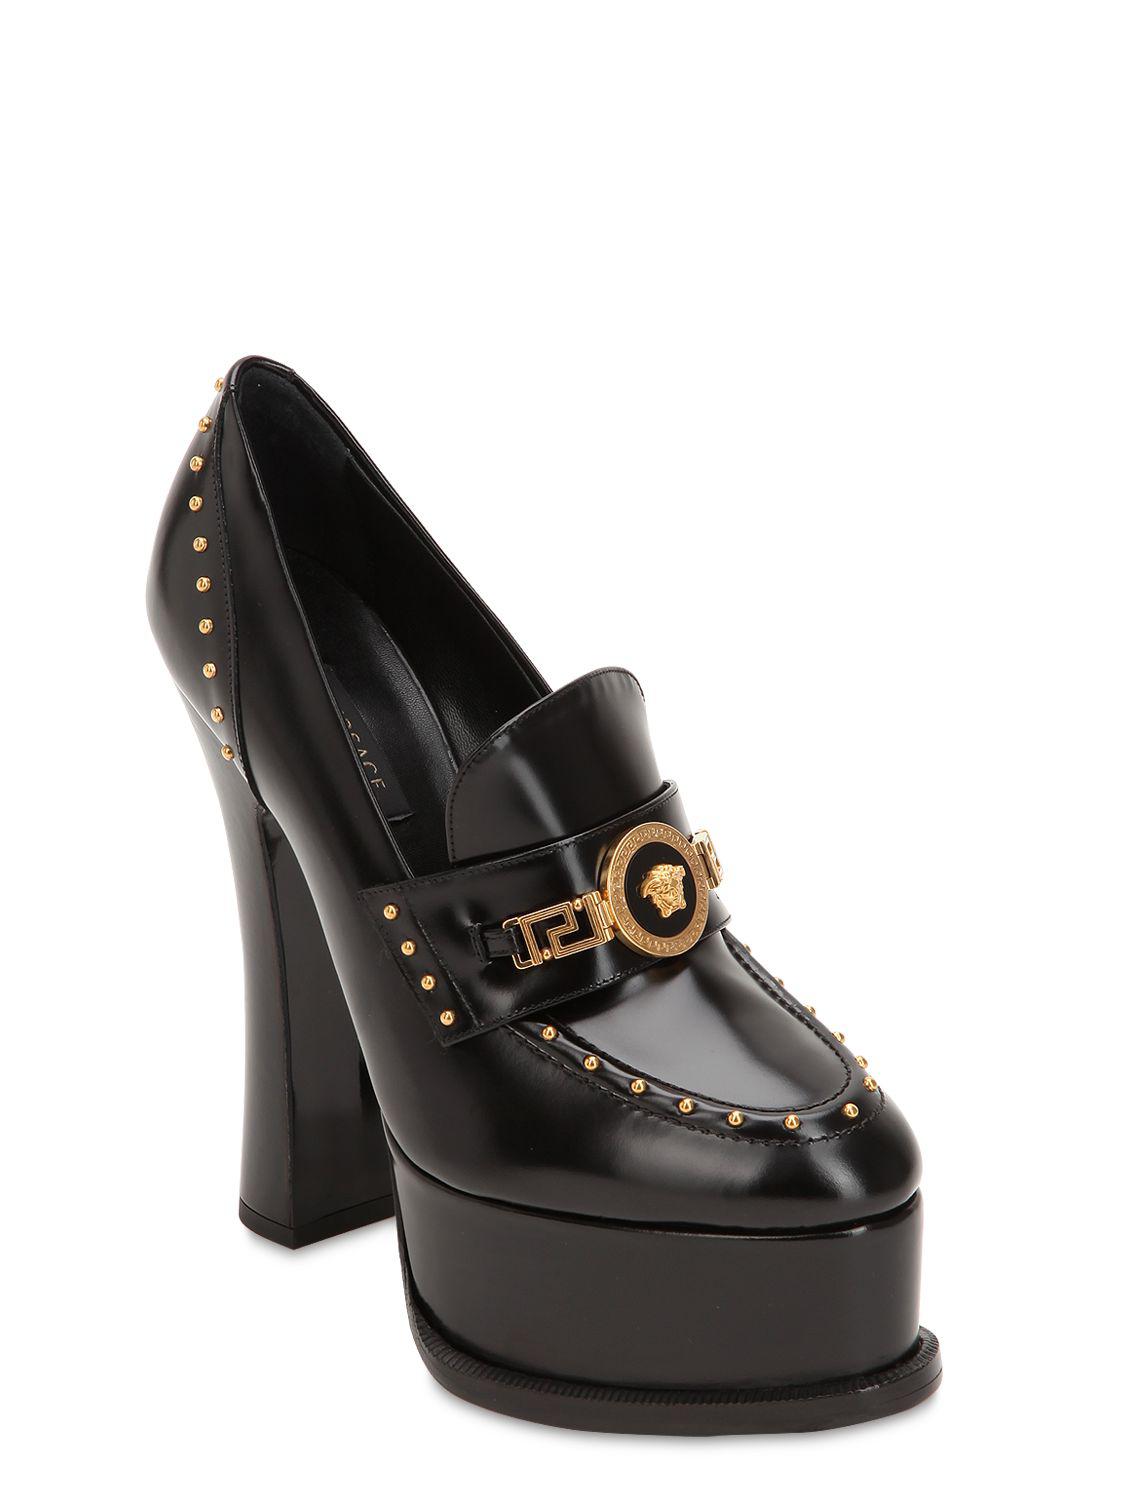 Total 58+ imagen versace loafer heels - Ecover.mx